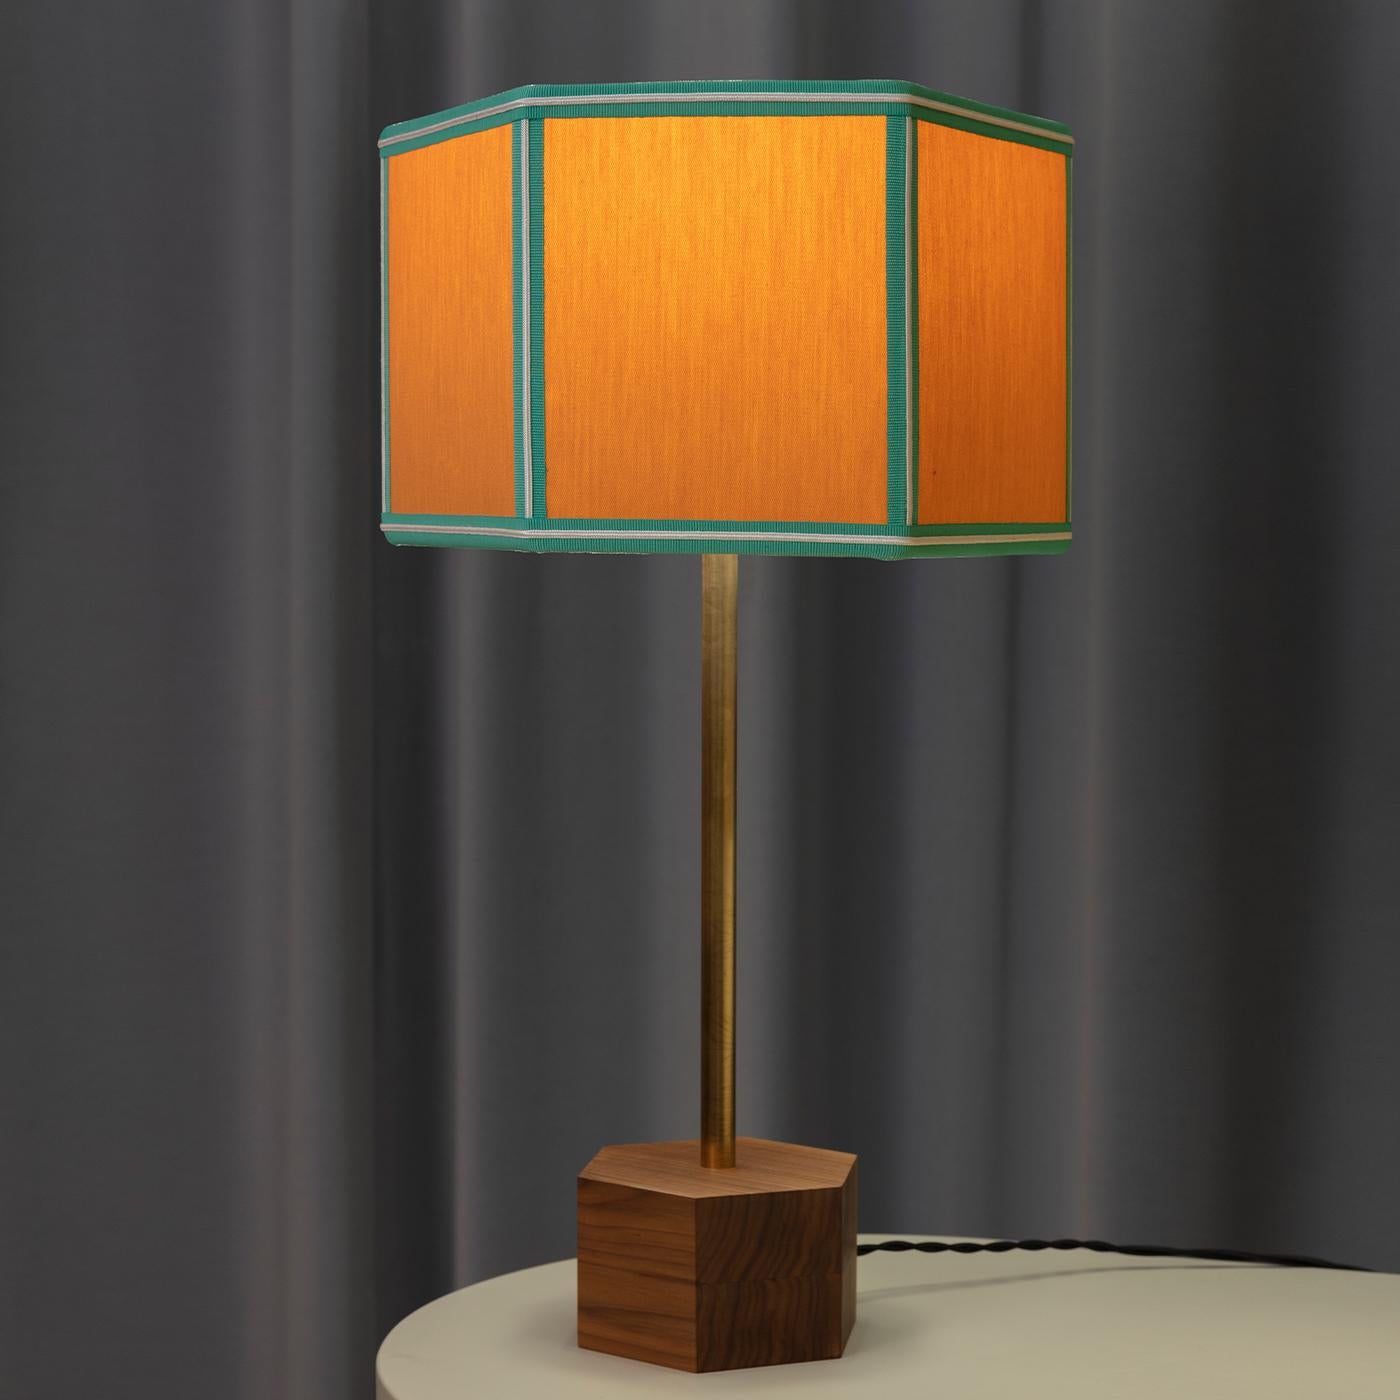 Le lampadaire Easy est tout en géométrie simple et classique, magistralement revisitée à travers différentes combinaisons de couleurs. Le tissu de coton de l'abat-jour est présenté dans des couleurs unies avec des garnitures contrastées et des